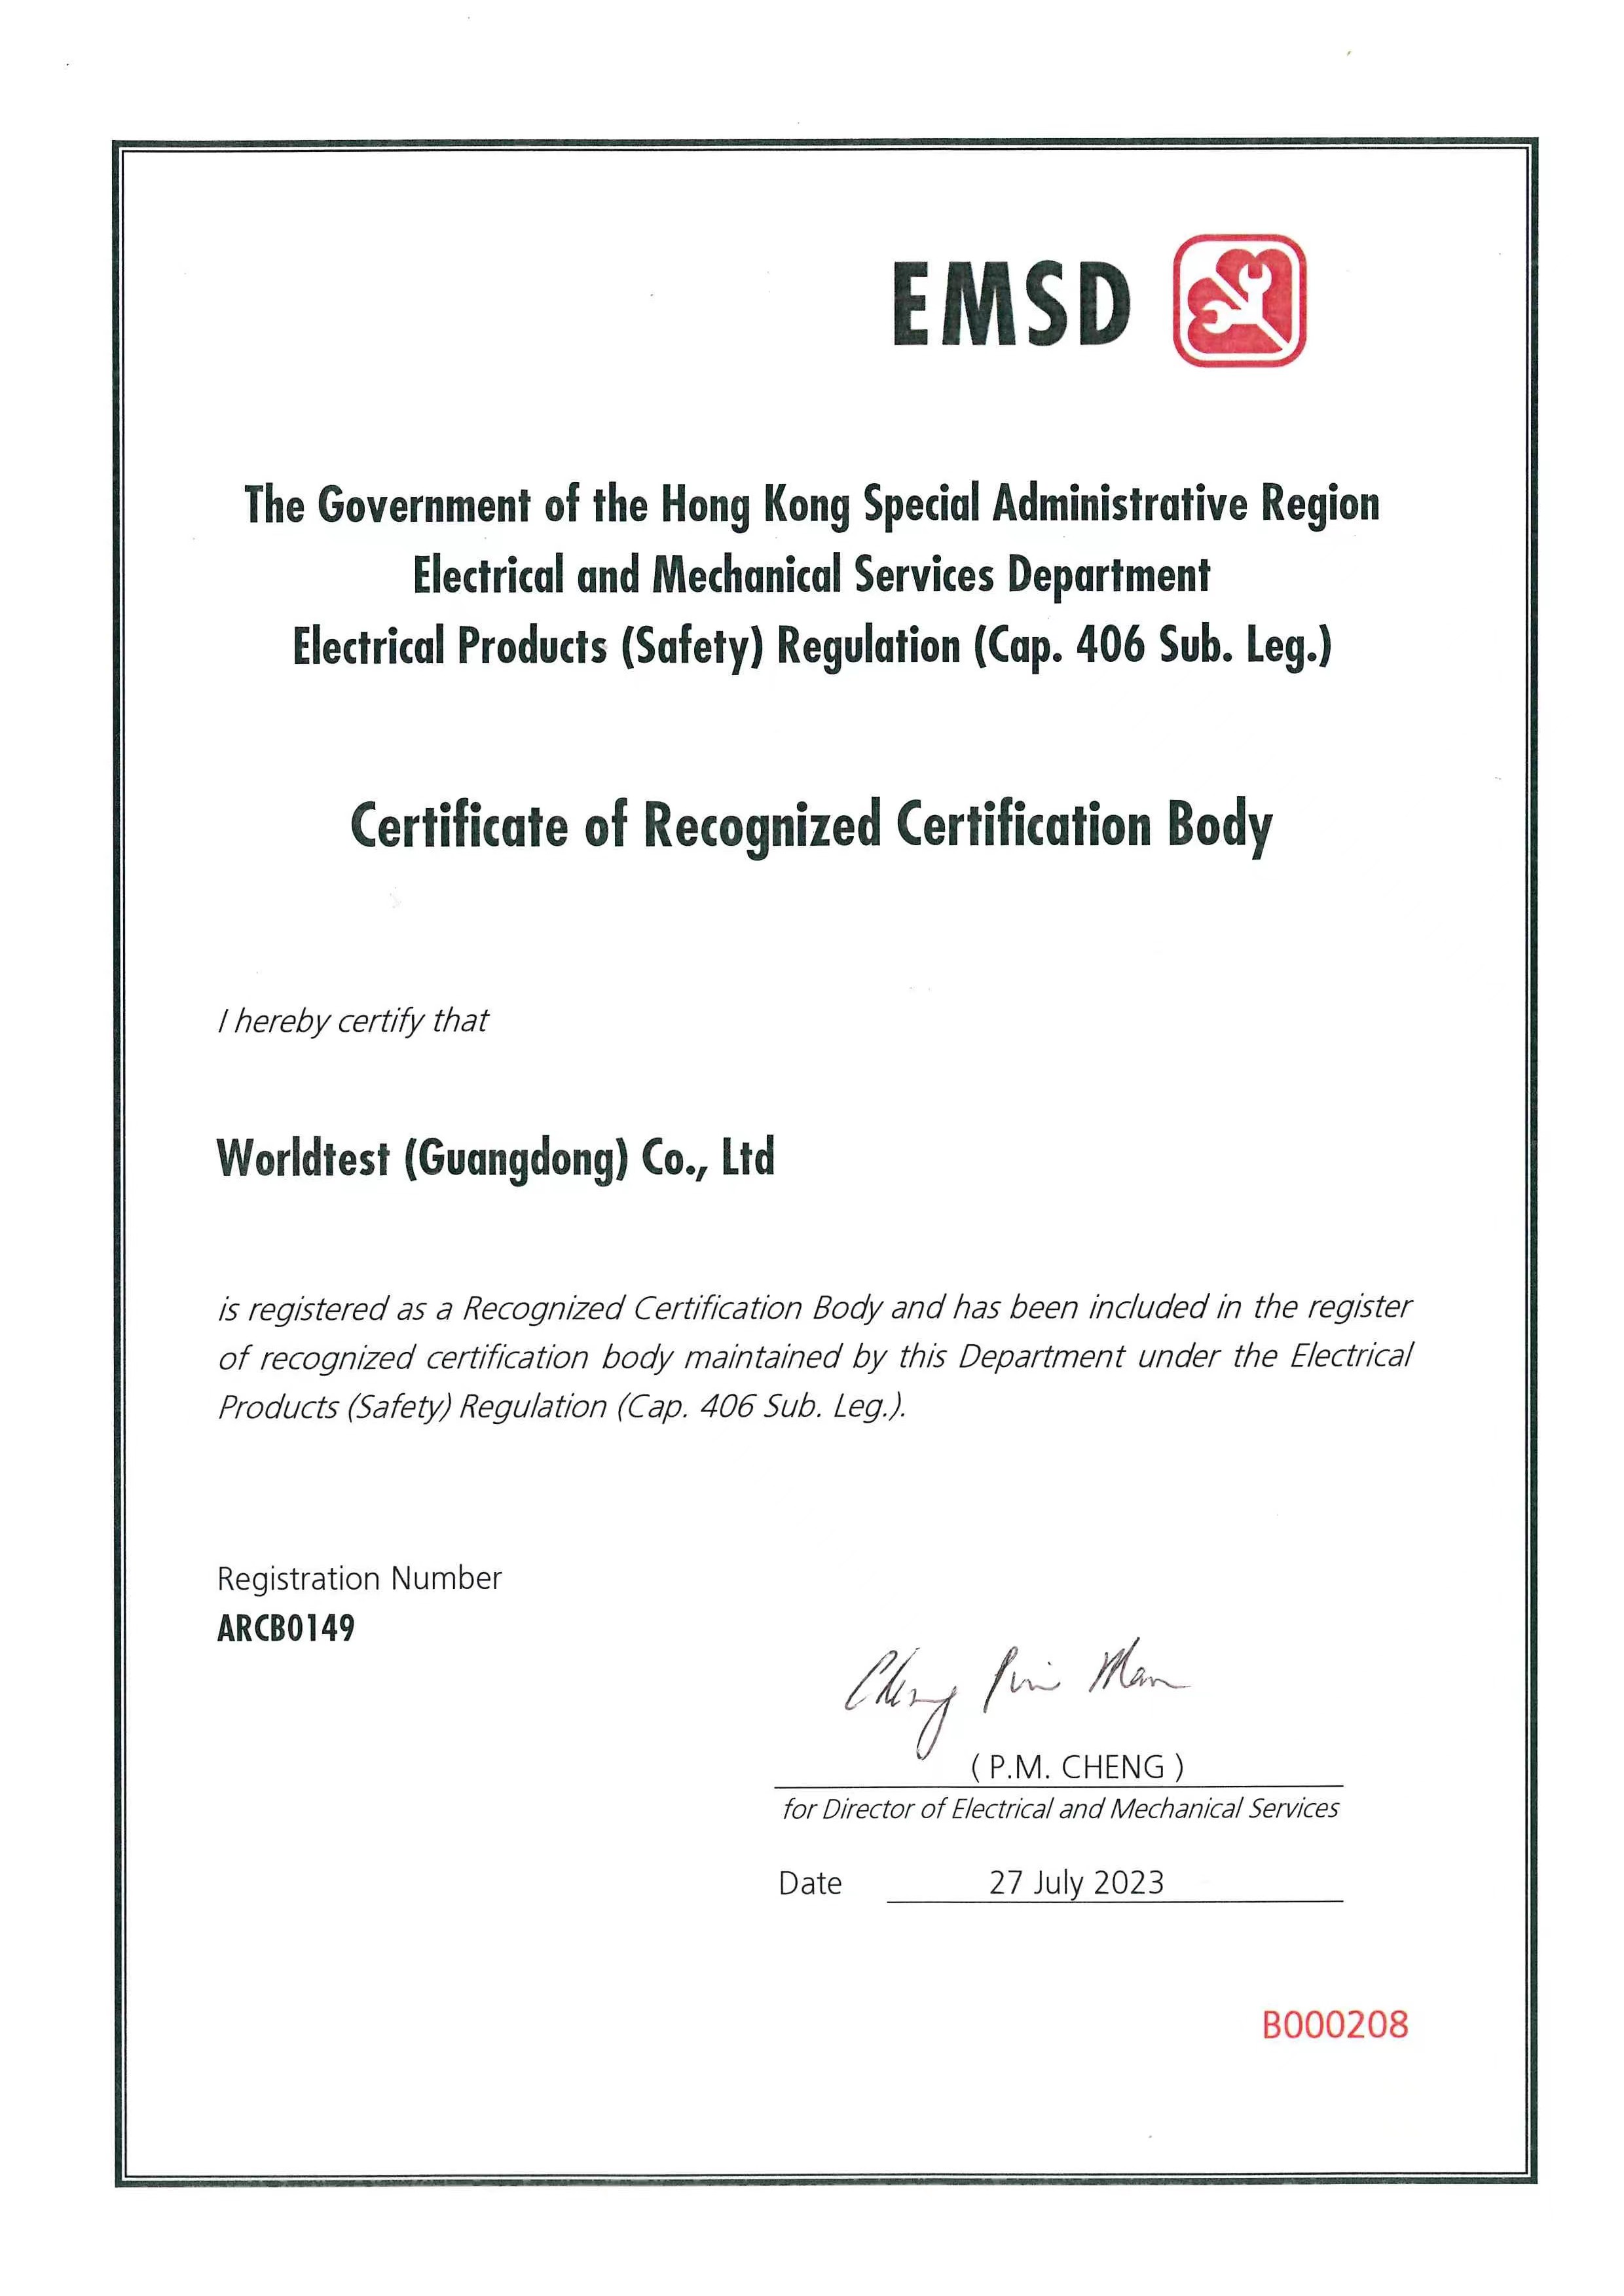 香港机电工程署证书